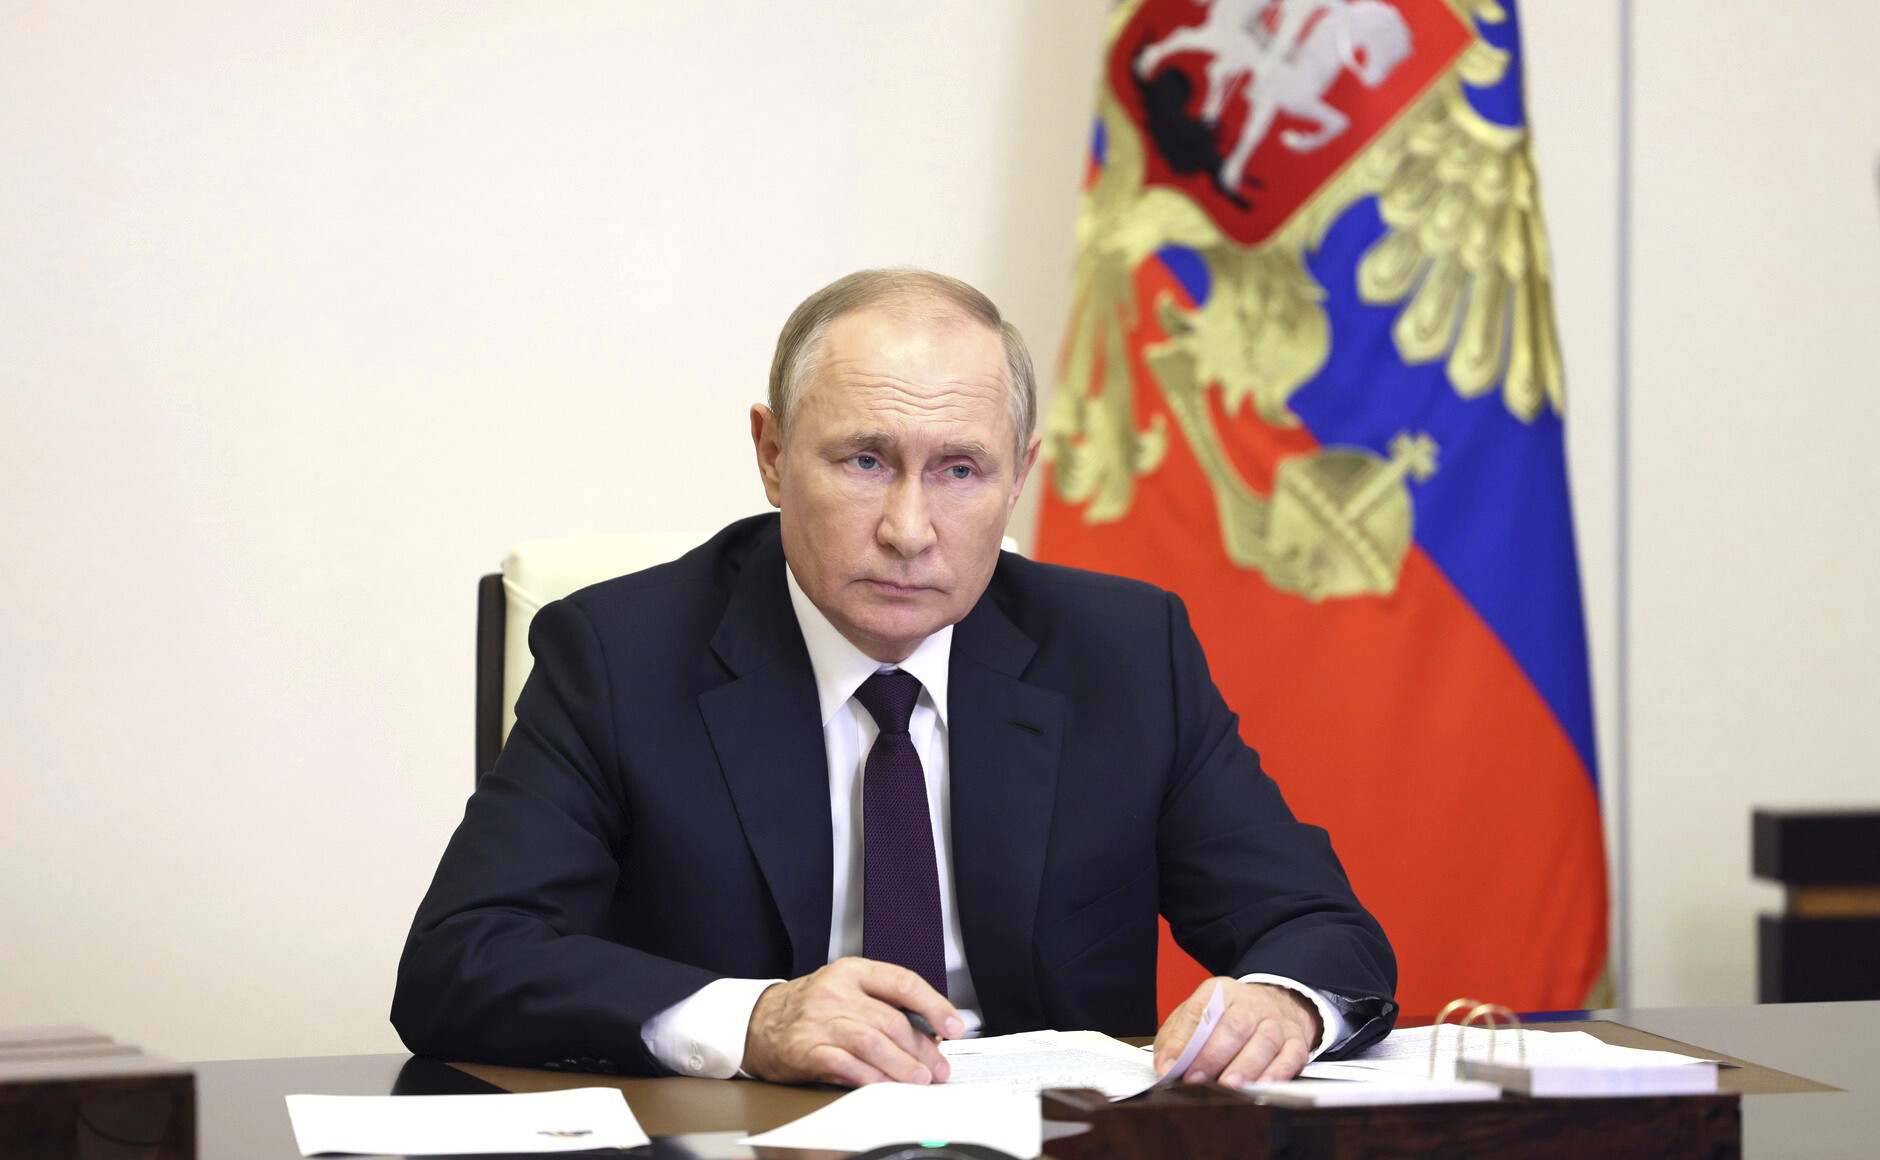 Опросы ФОМ и ВЦИОМ показали, что подавляющее большинство россиян высоко оценивают работу Путина